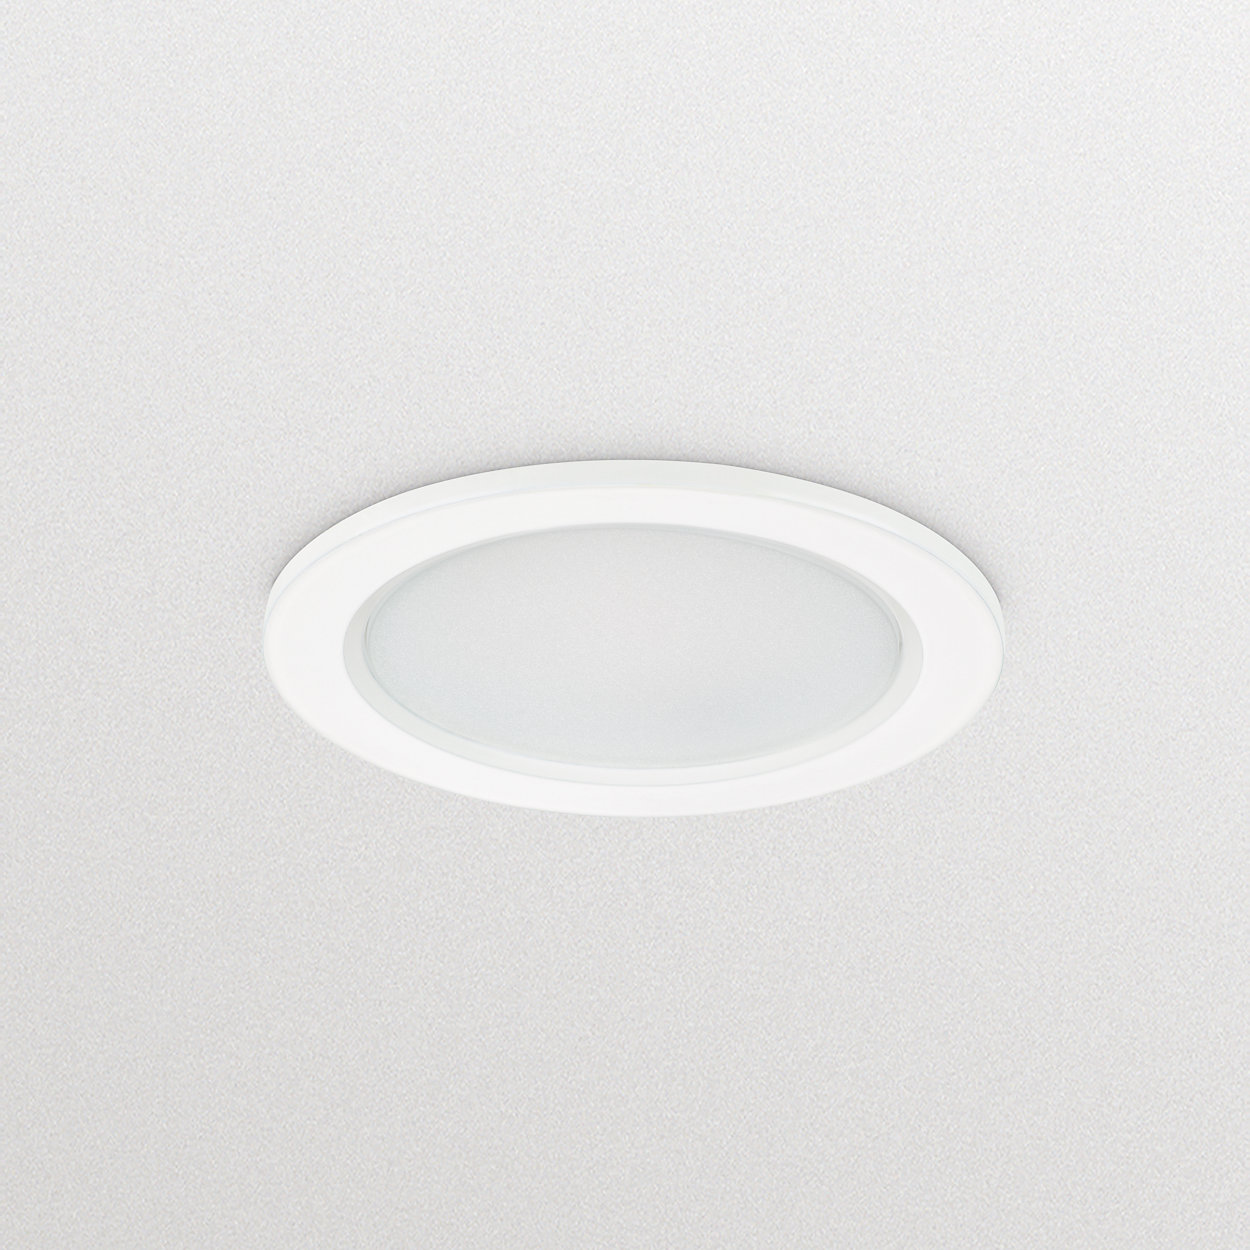 CoreLine SlimDownlight - La soluzione ideale per garantire un ottimo rapporto efficienza/qualità della luce